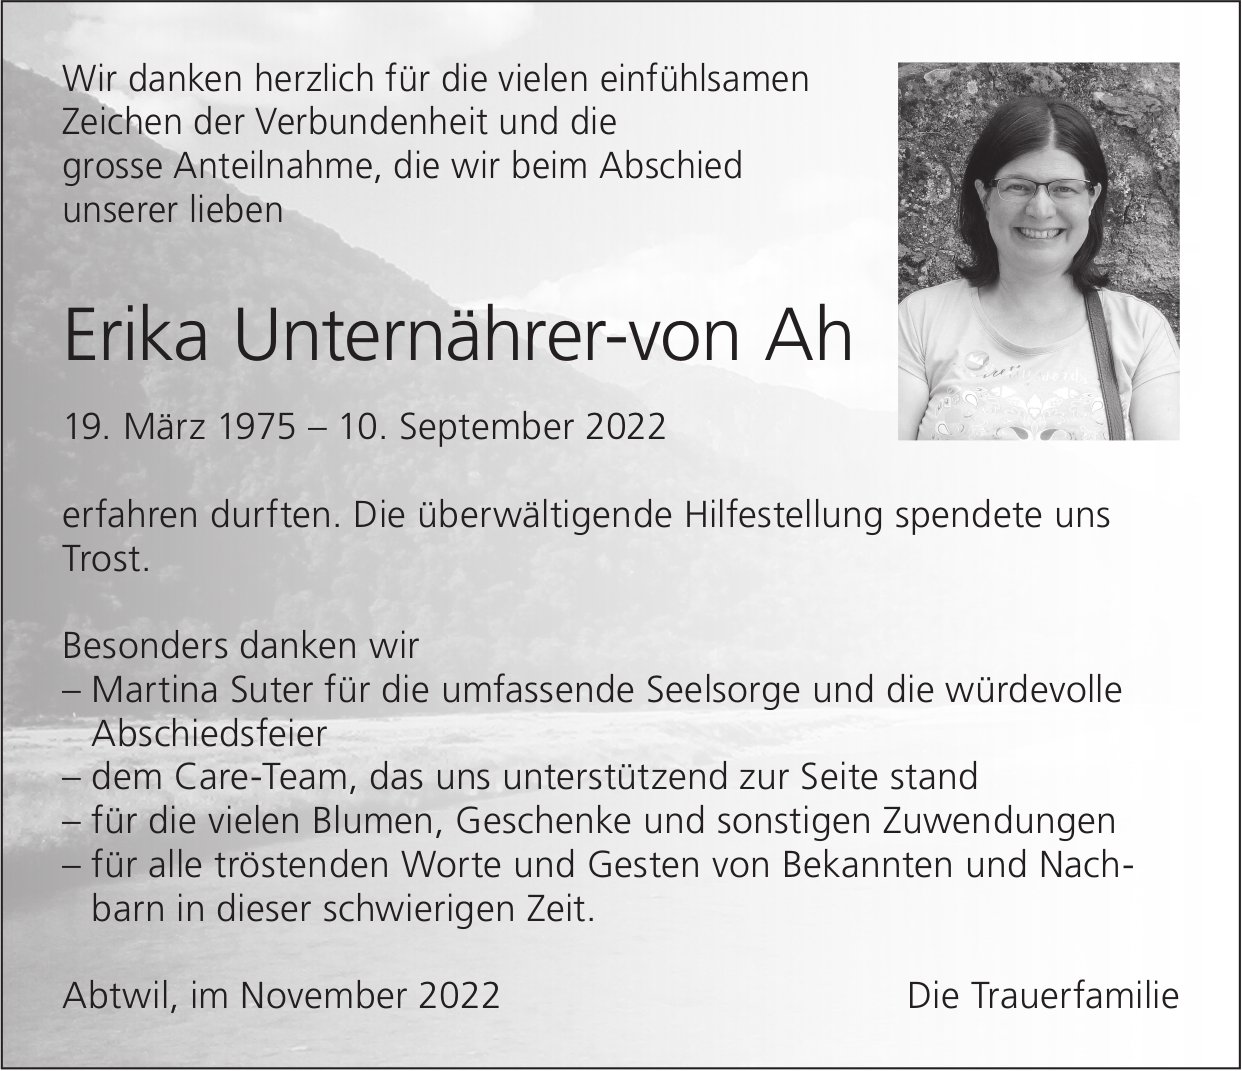 Ah Erika Unternährer-von, im November 2022 / DS